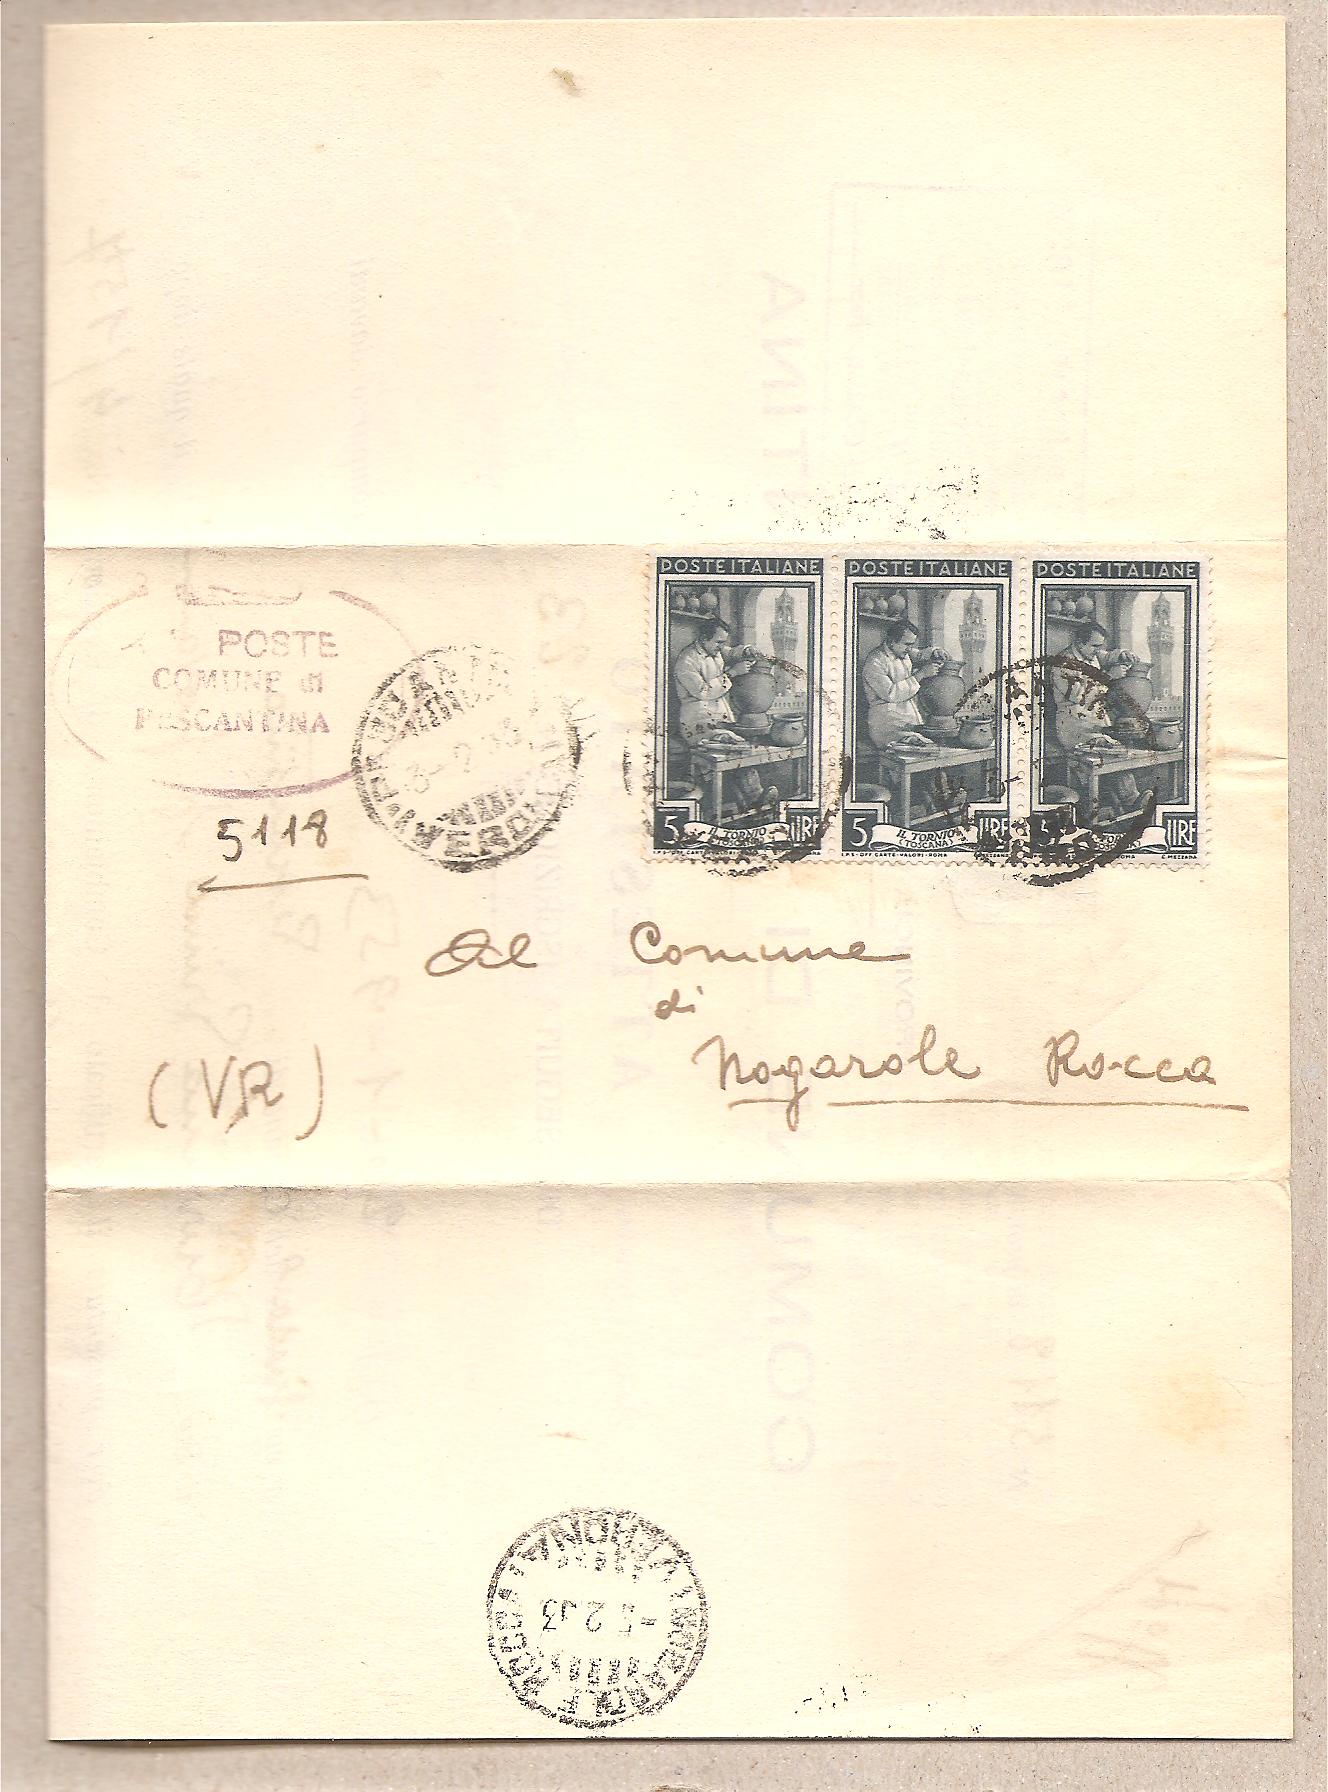 49701 - Italia - lettera dal comune di Pescantina (VR) a Nogarole Rocca (VR) Attestato di avvenuta iscrizione - 1953